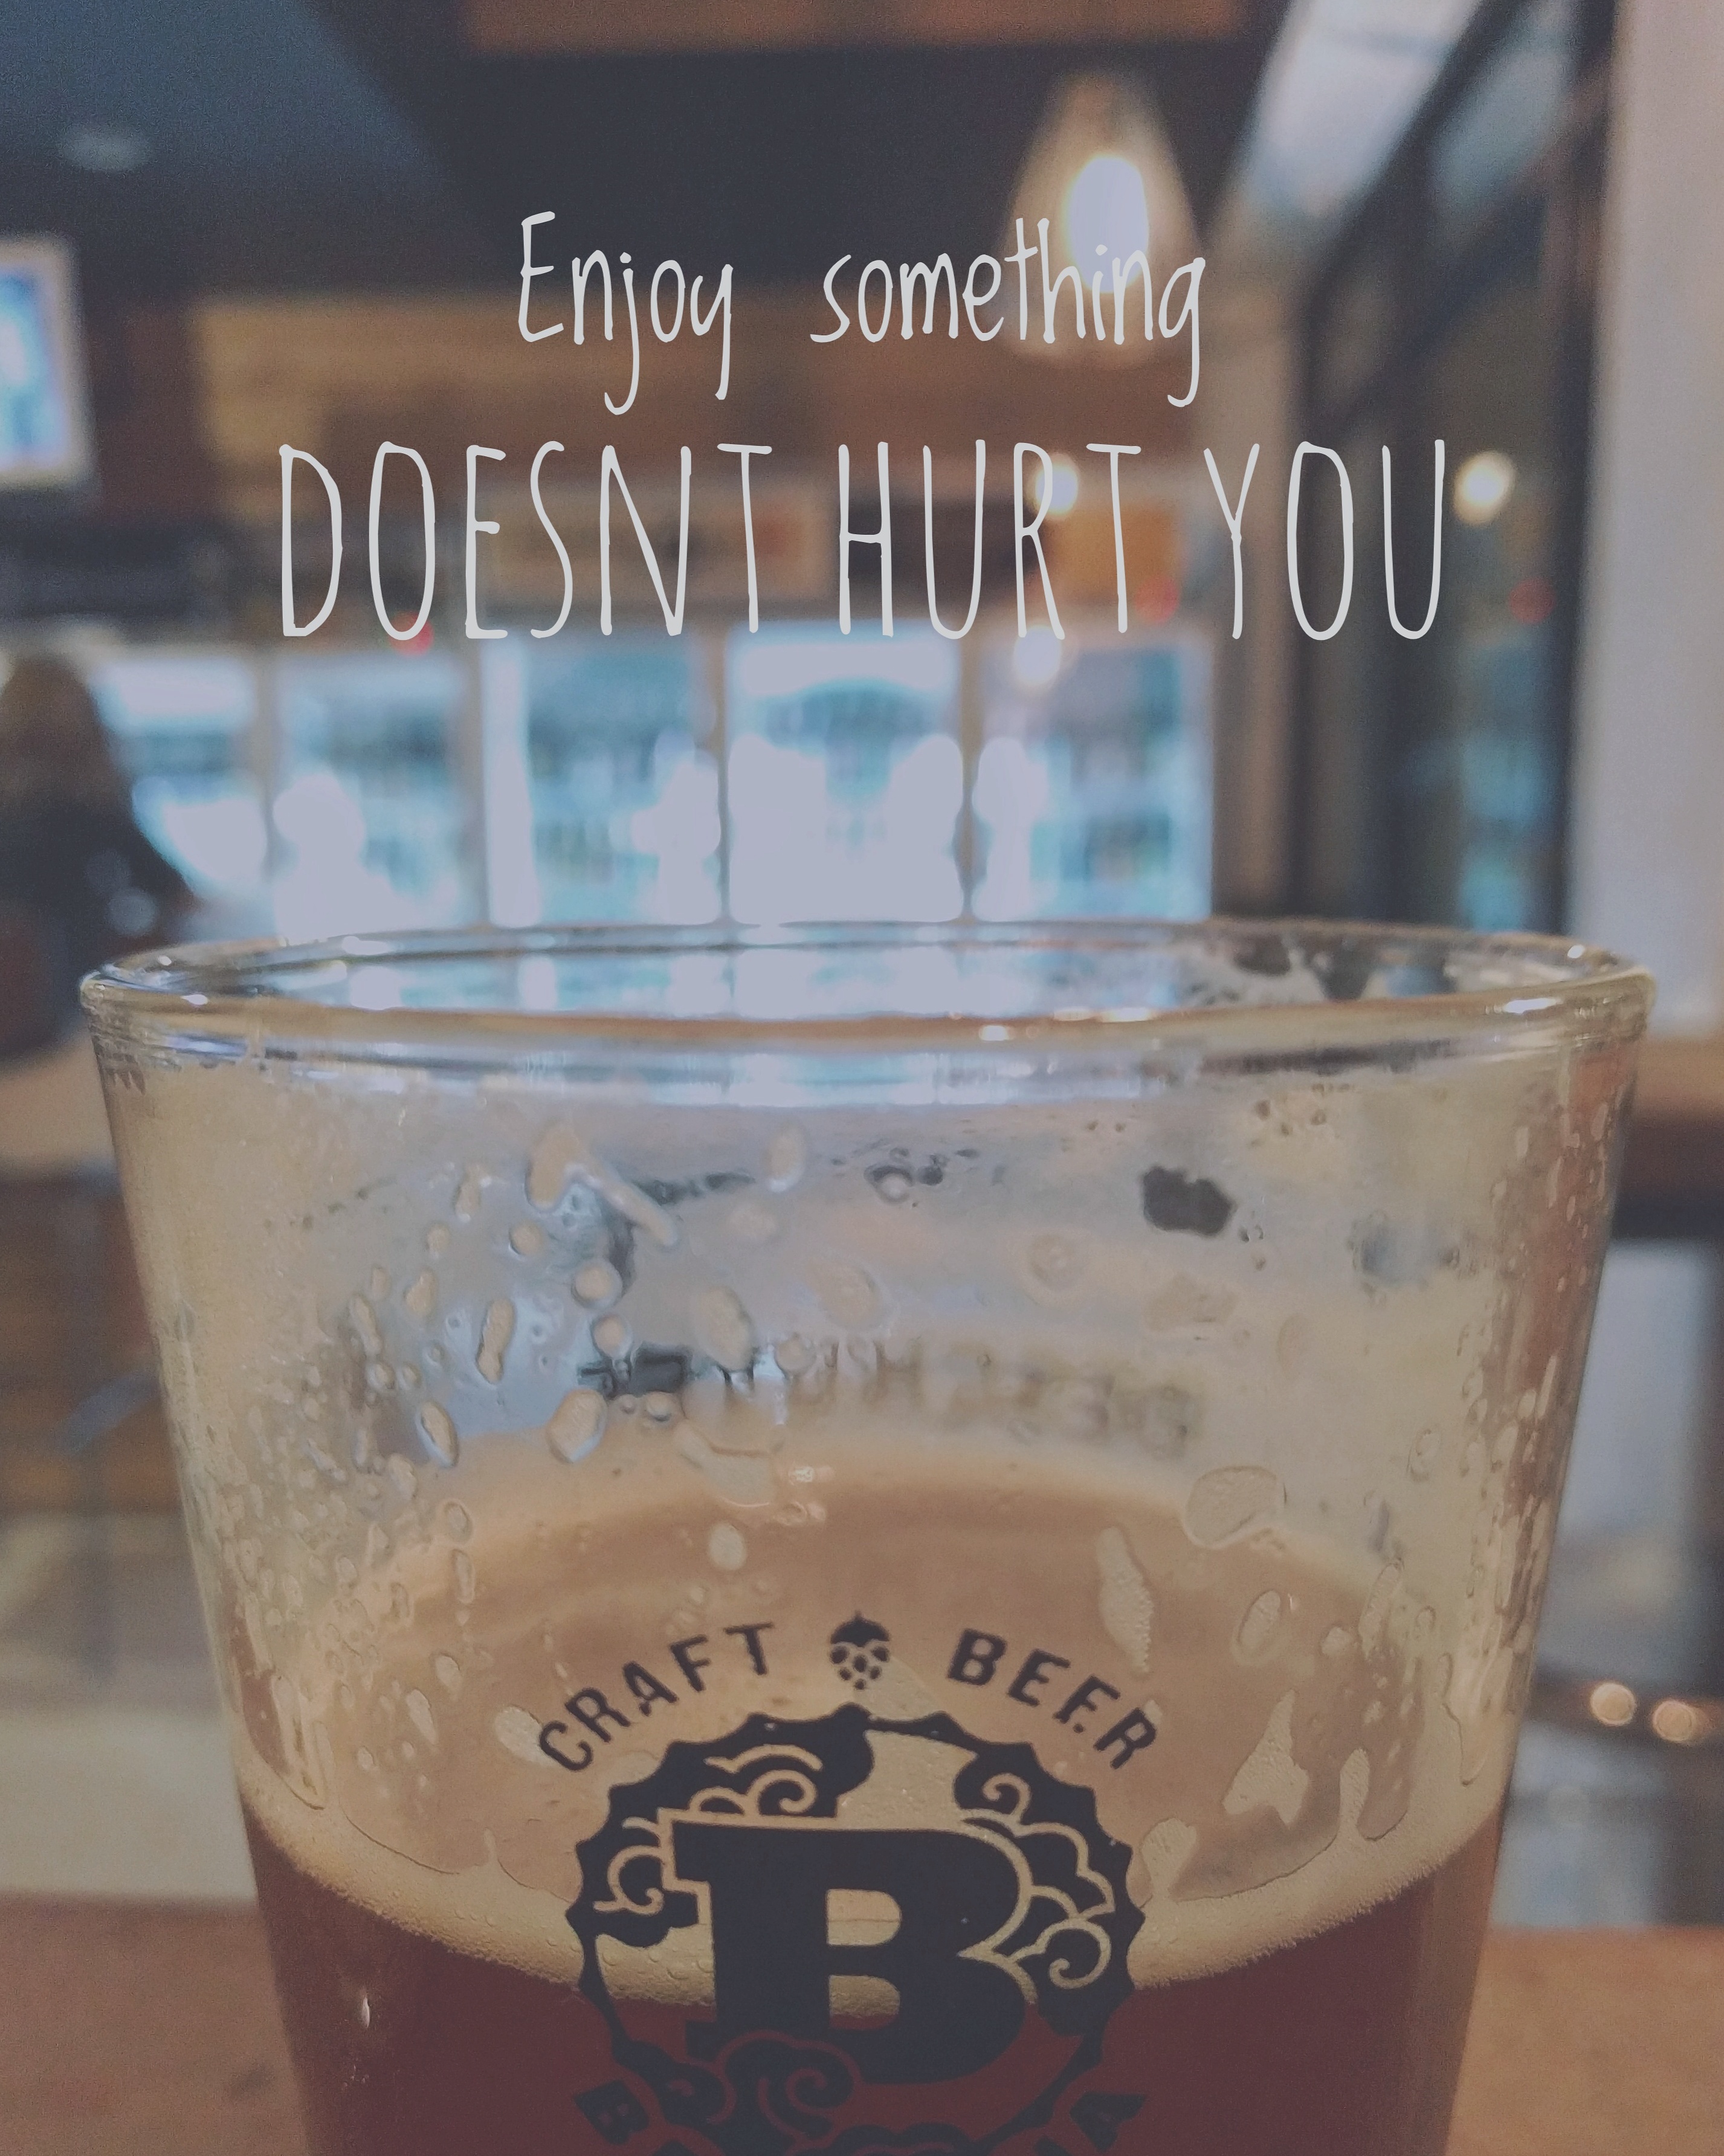 enjoy-something-doesnt-hurt-you